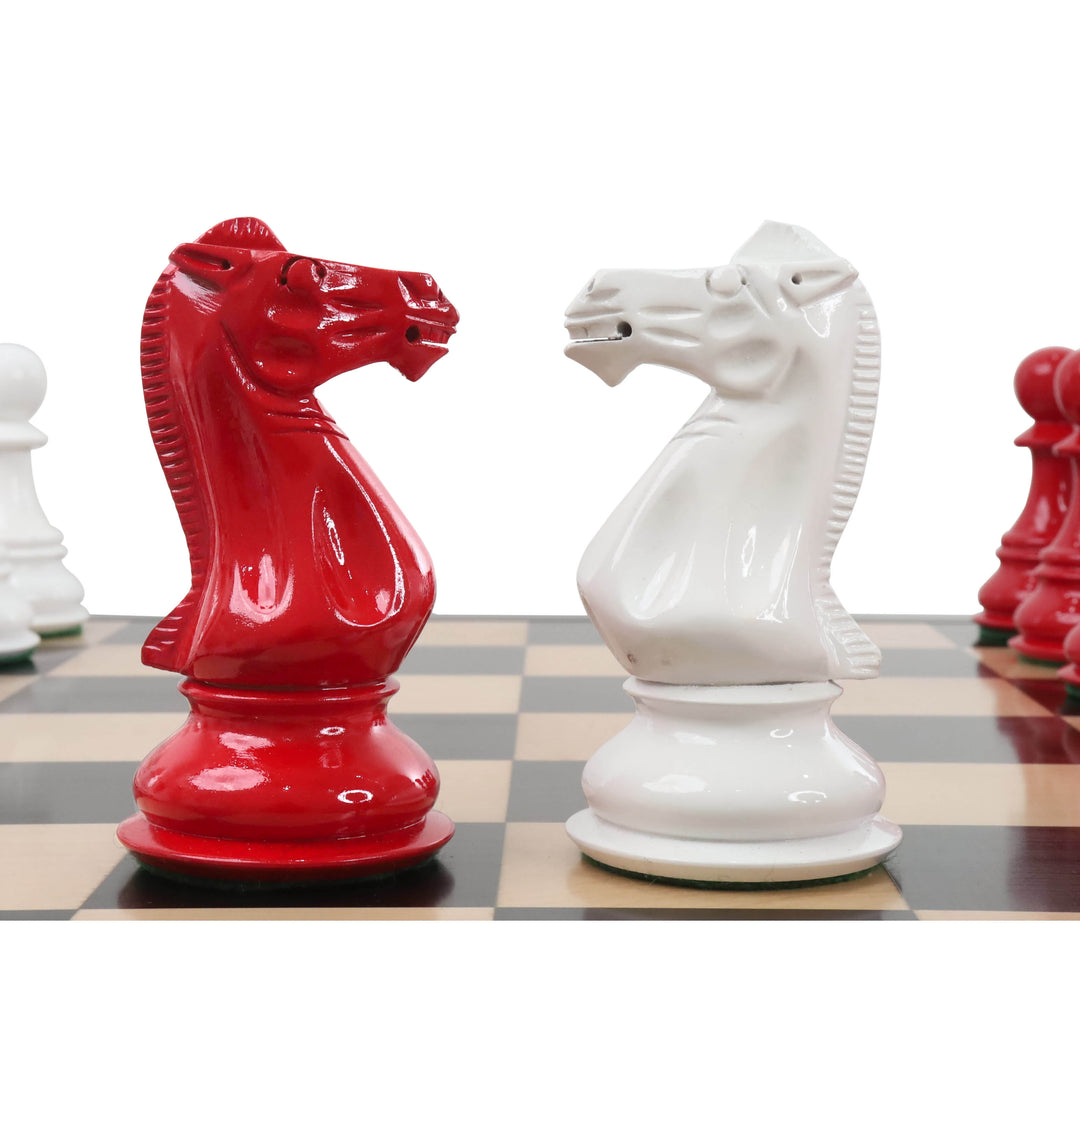 Luksusowy zestaw szachów 6,3" Jumbo Pro Staunton - tylko szachy - lakierowane na czerwono i biało